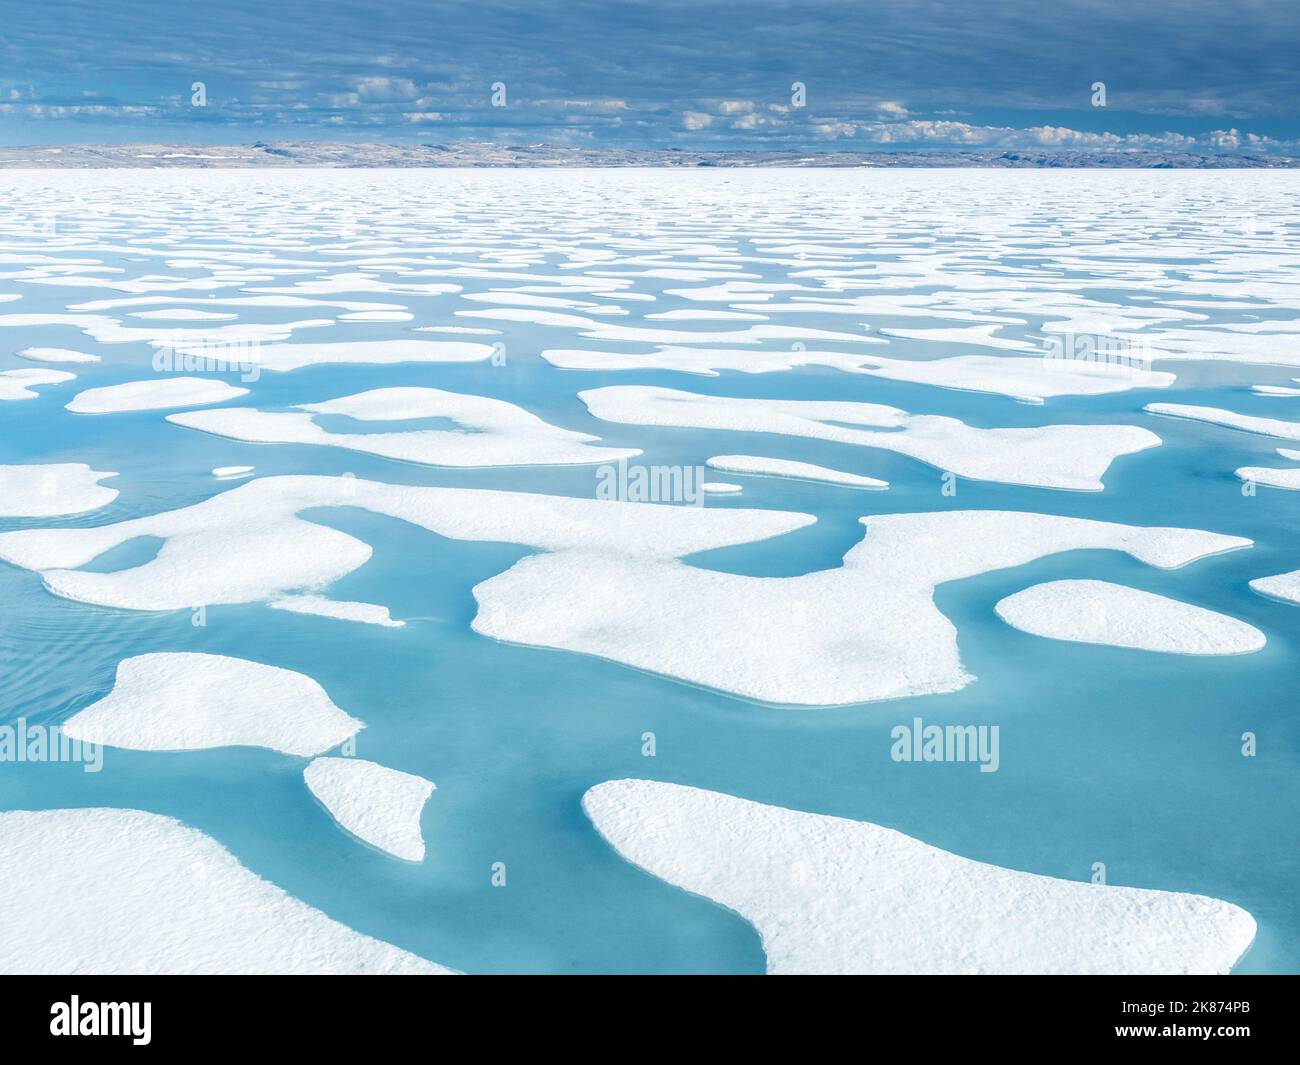 Bassins d'eau de fonte dans la glace de 10/10ths dans le chenal McClintock, passage du Nord-Ouest, Nunavut, Canada, Amérique du Nord Banque D'Images